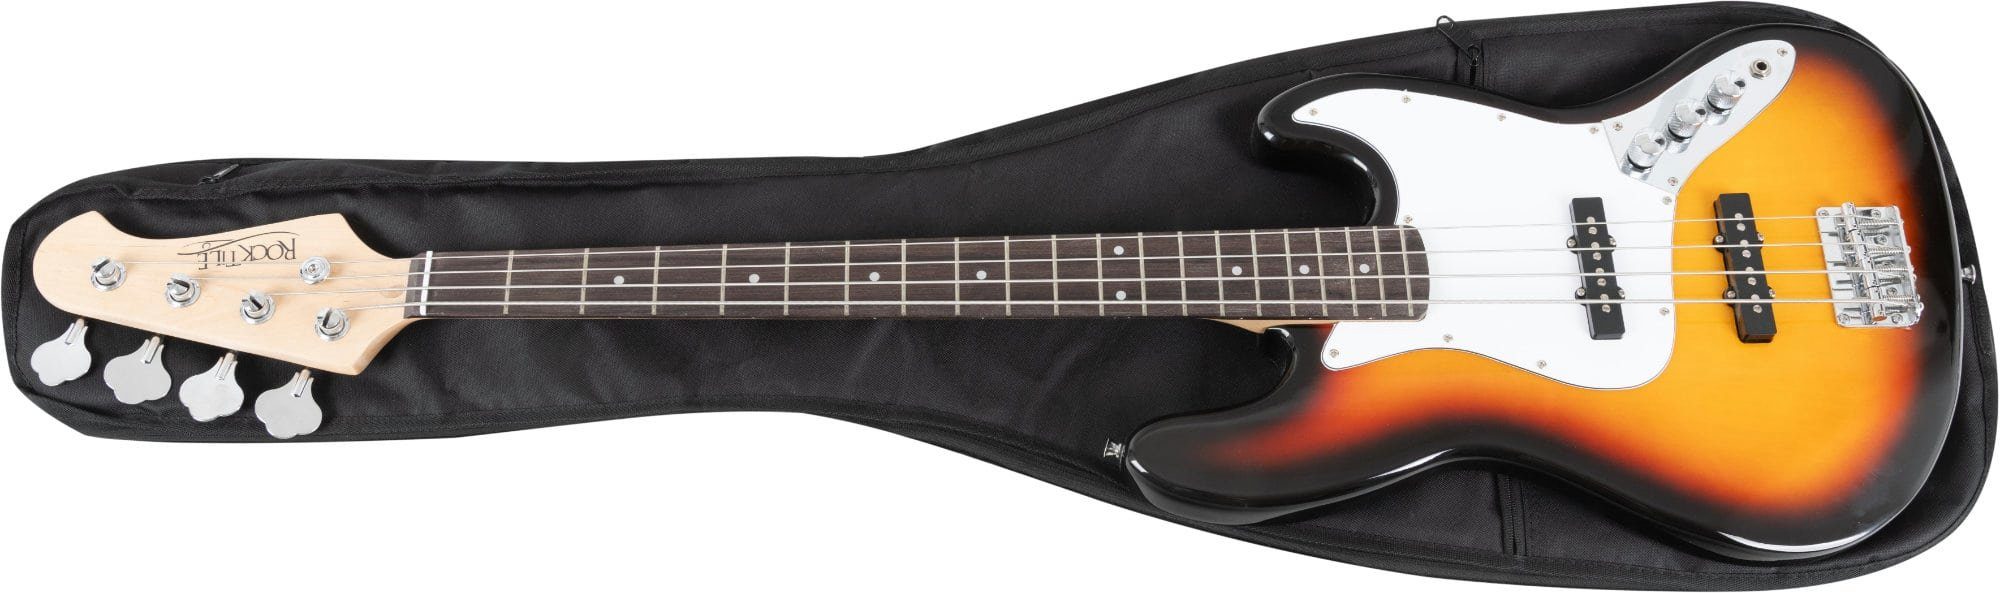 Schwarz, Rucksackgurten mit verstellbaren McGrey Gitarrentasche E-Basstasche EBEB-1222BK gepolsterte aus E-Basstasche Nylon